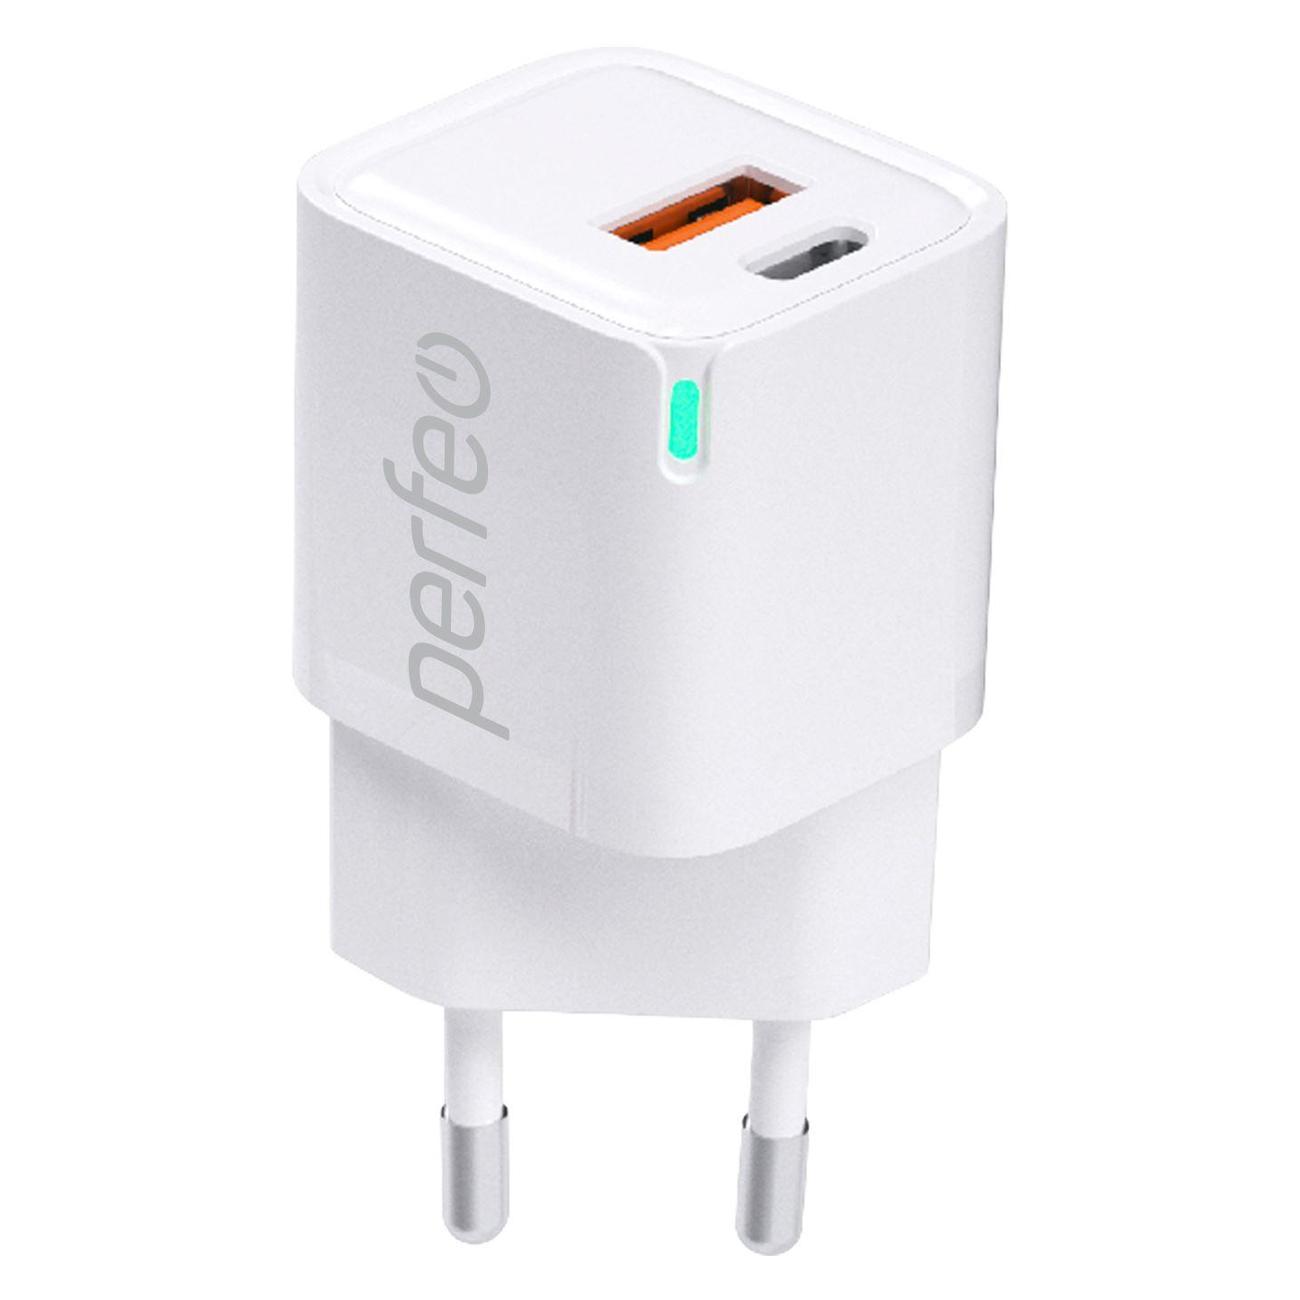 Сетевое зарядное устройство Perfeo I4652 20 Вт, USB, EU, USB type-C, Quick Charge, PD, белый (I4652) - фото 1